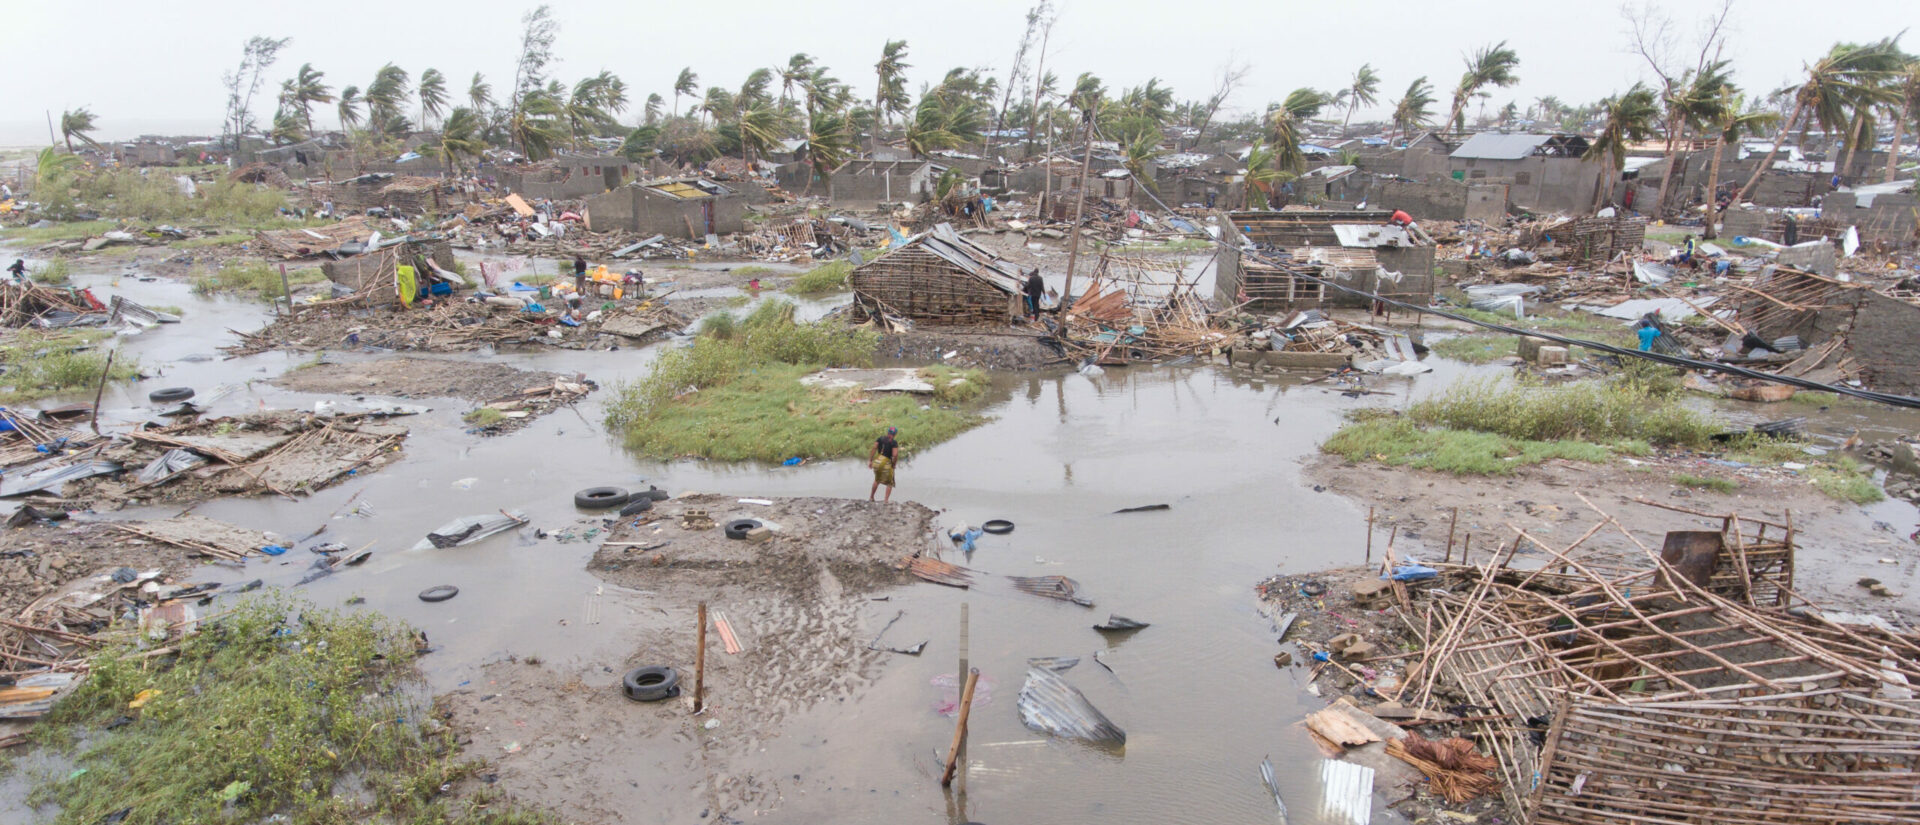 En mars 2019, le cyclone Idai a ravagé une partie du Mozambique | © Climate Centre/Flickr/CC BY-NC 2.0